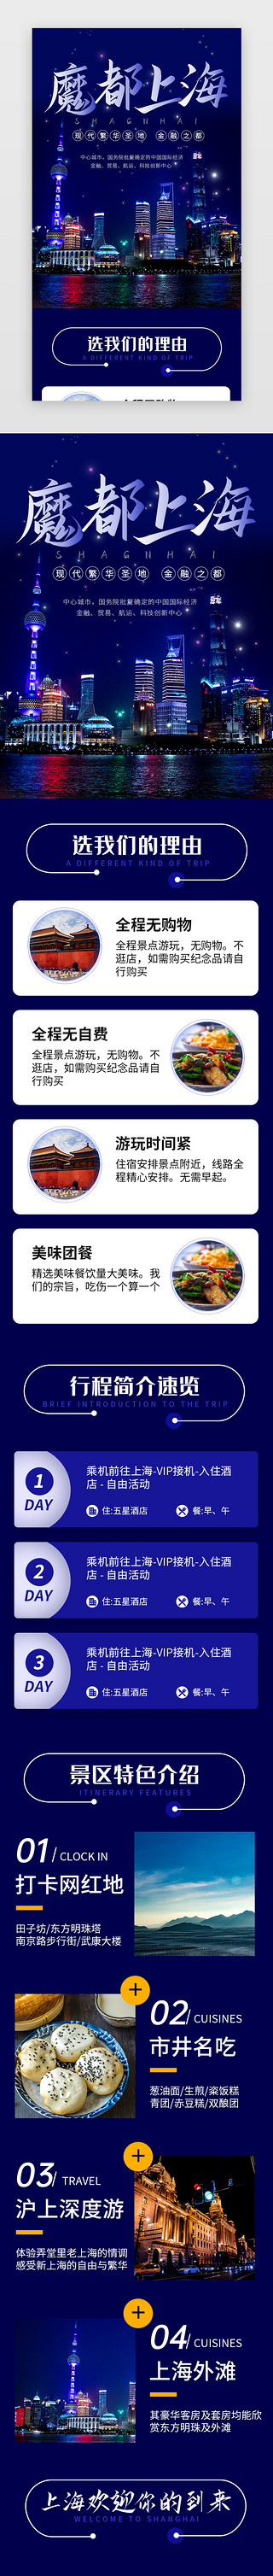 介绍家乡的pptUI设计素材_蓝色魔都上海旅行景点介绍H5长图海报